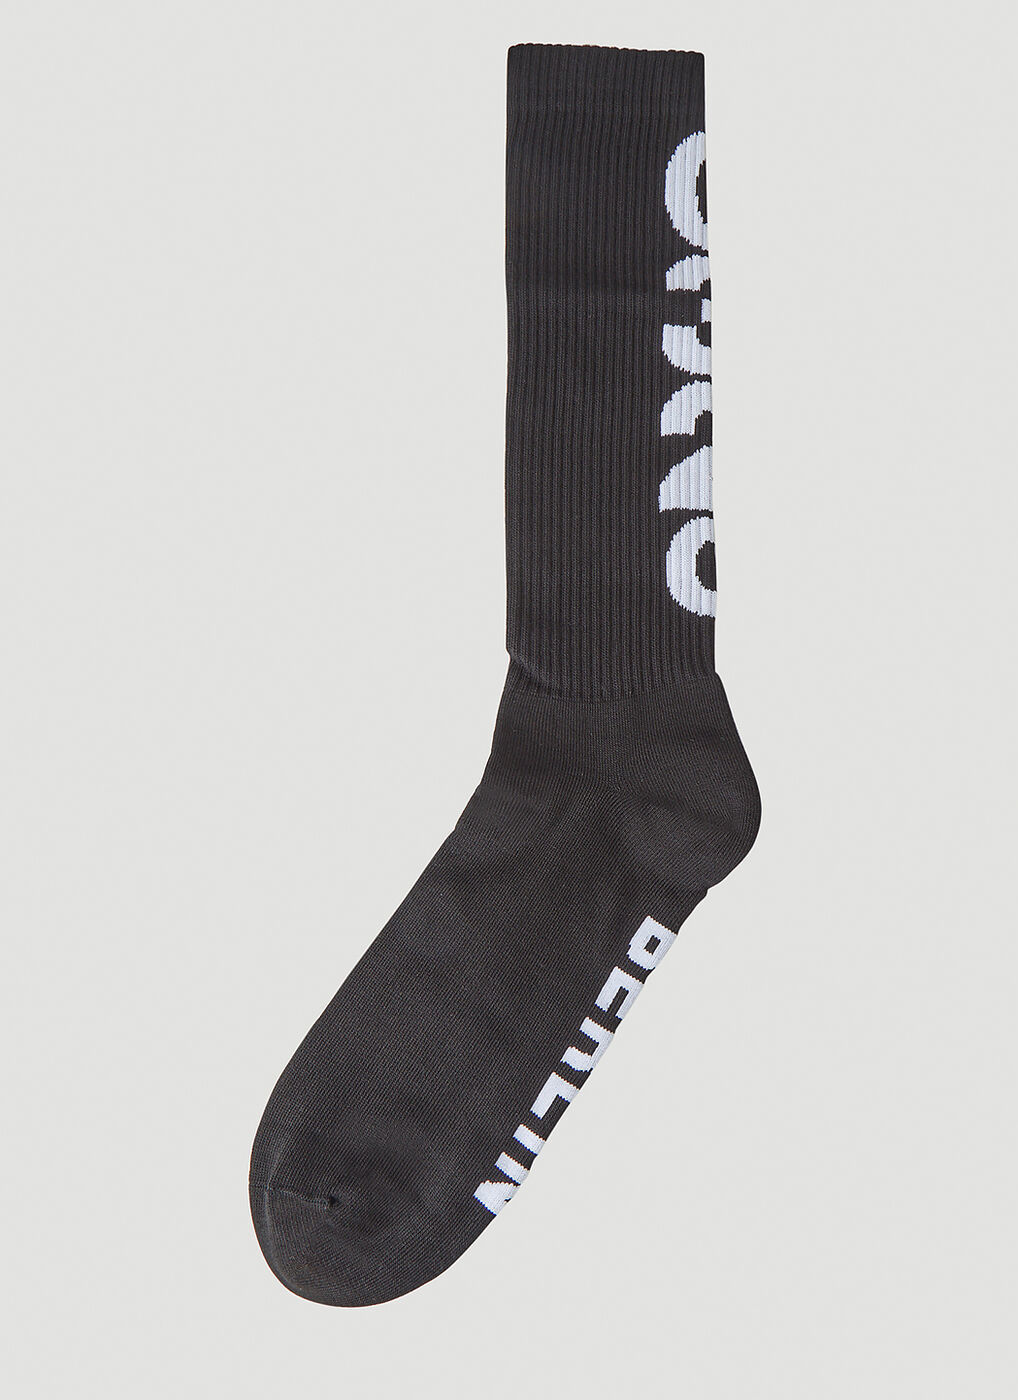 Logo Print Long Socks in Black